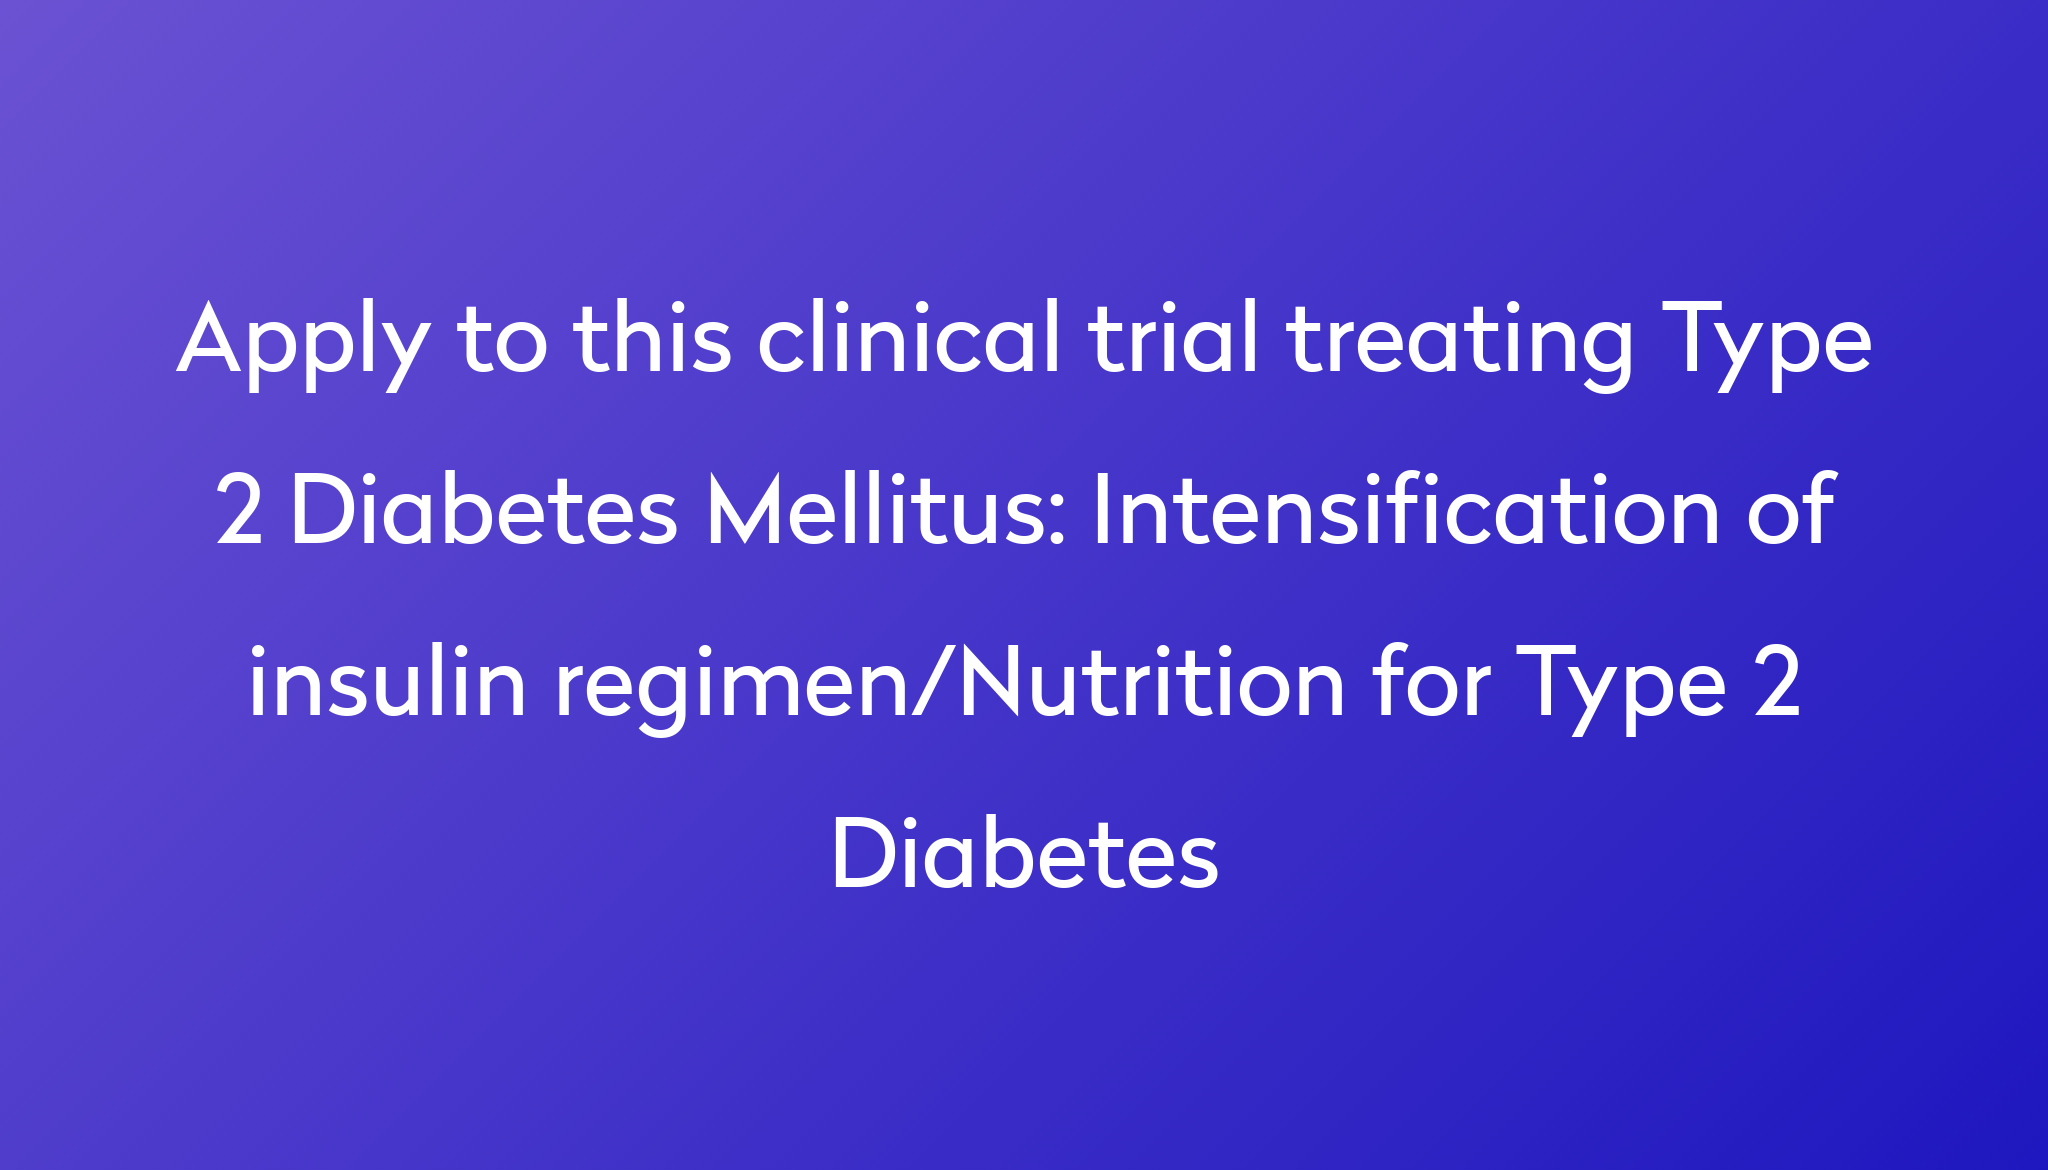 Intensification of insulin regimen/Nutrition for Type 2 Diabetes ...